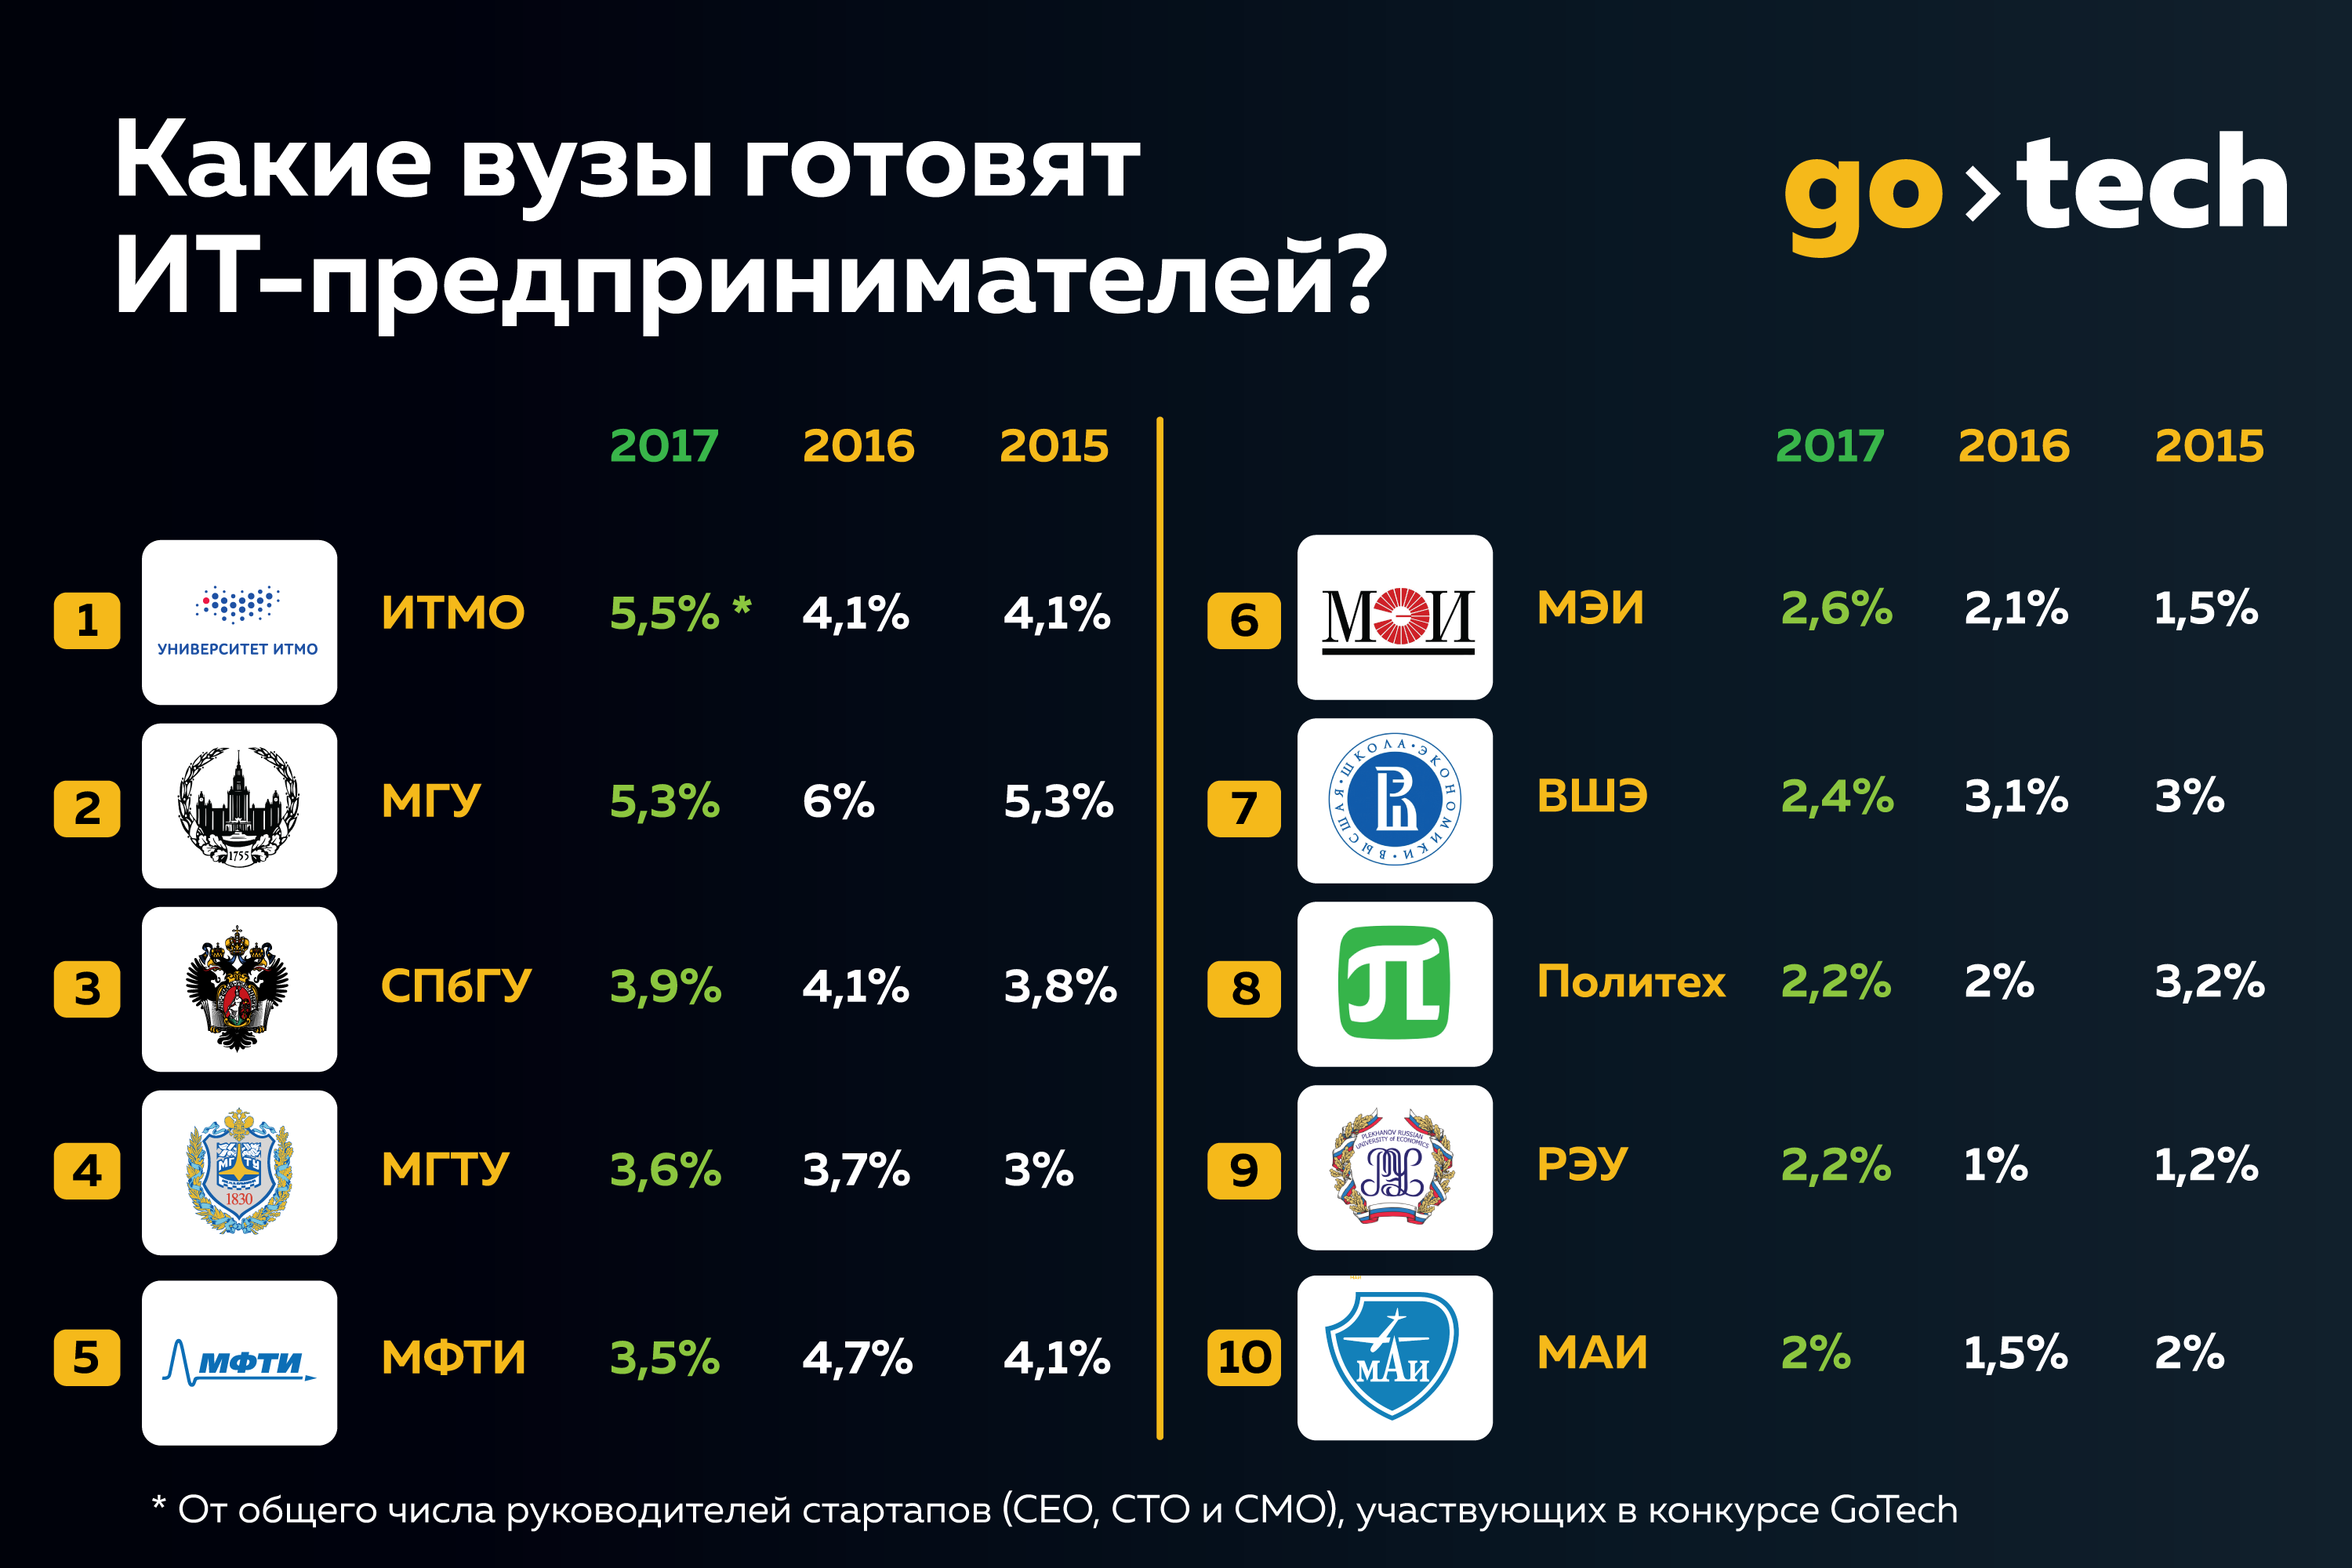 Рейтинг GoTech: какие вузы в России готовят больше всего ИТ-предпринимателей?